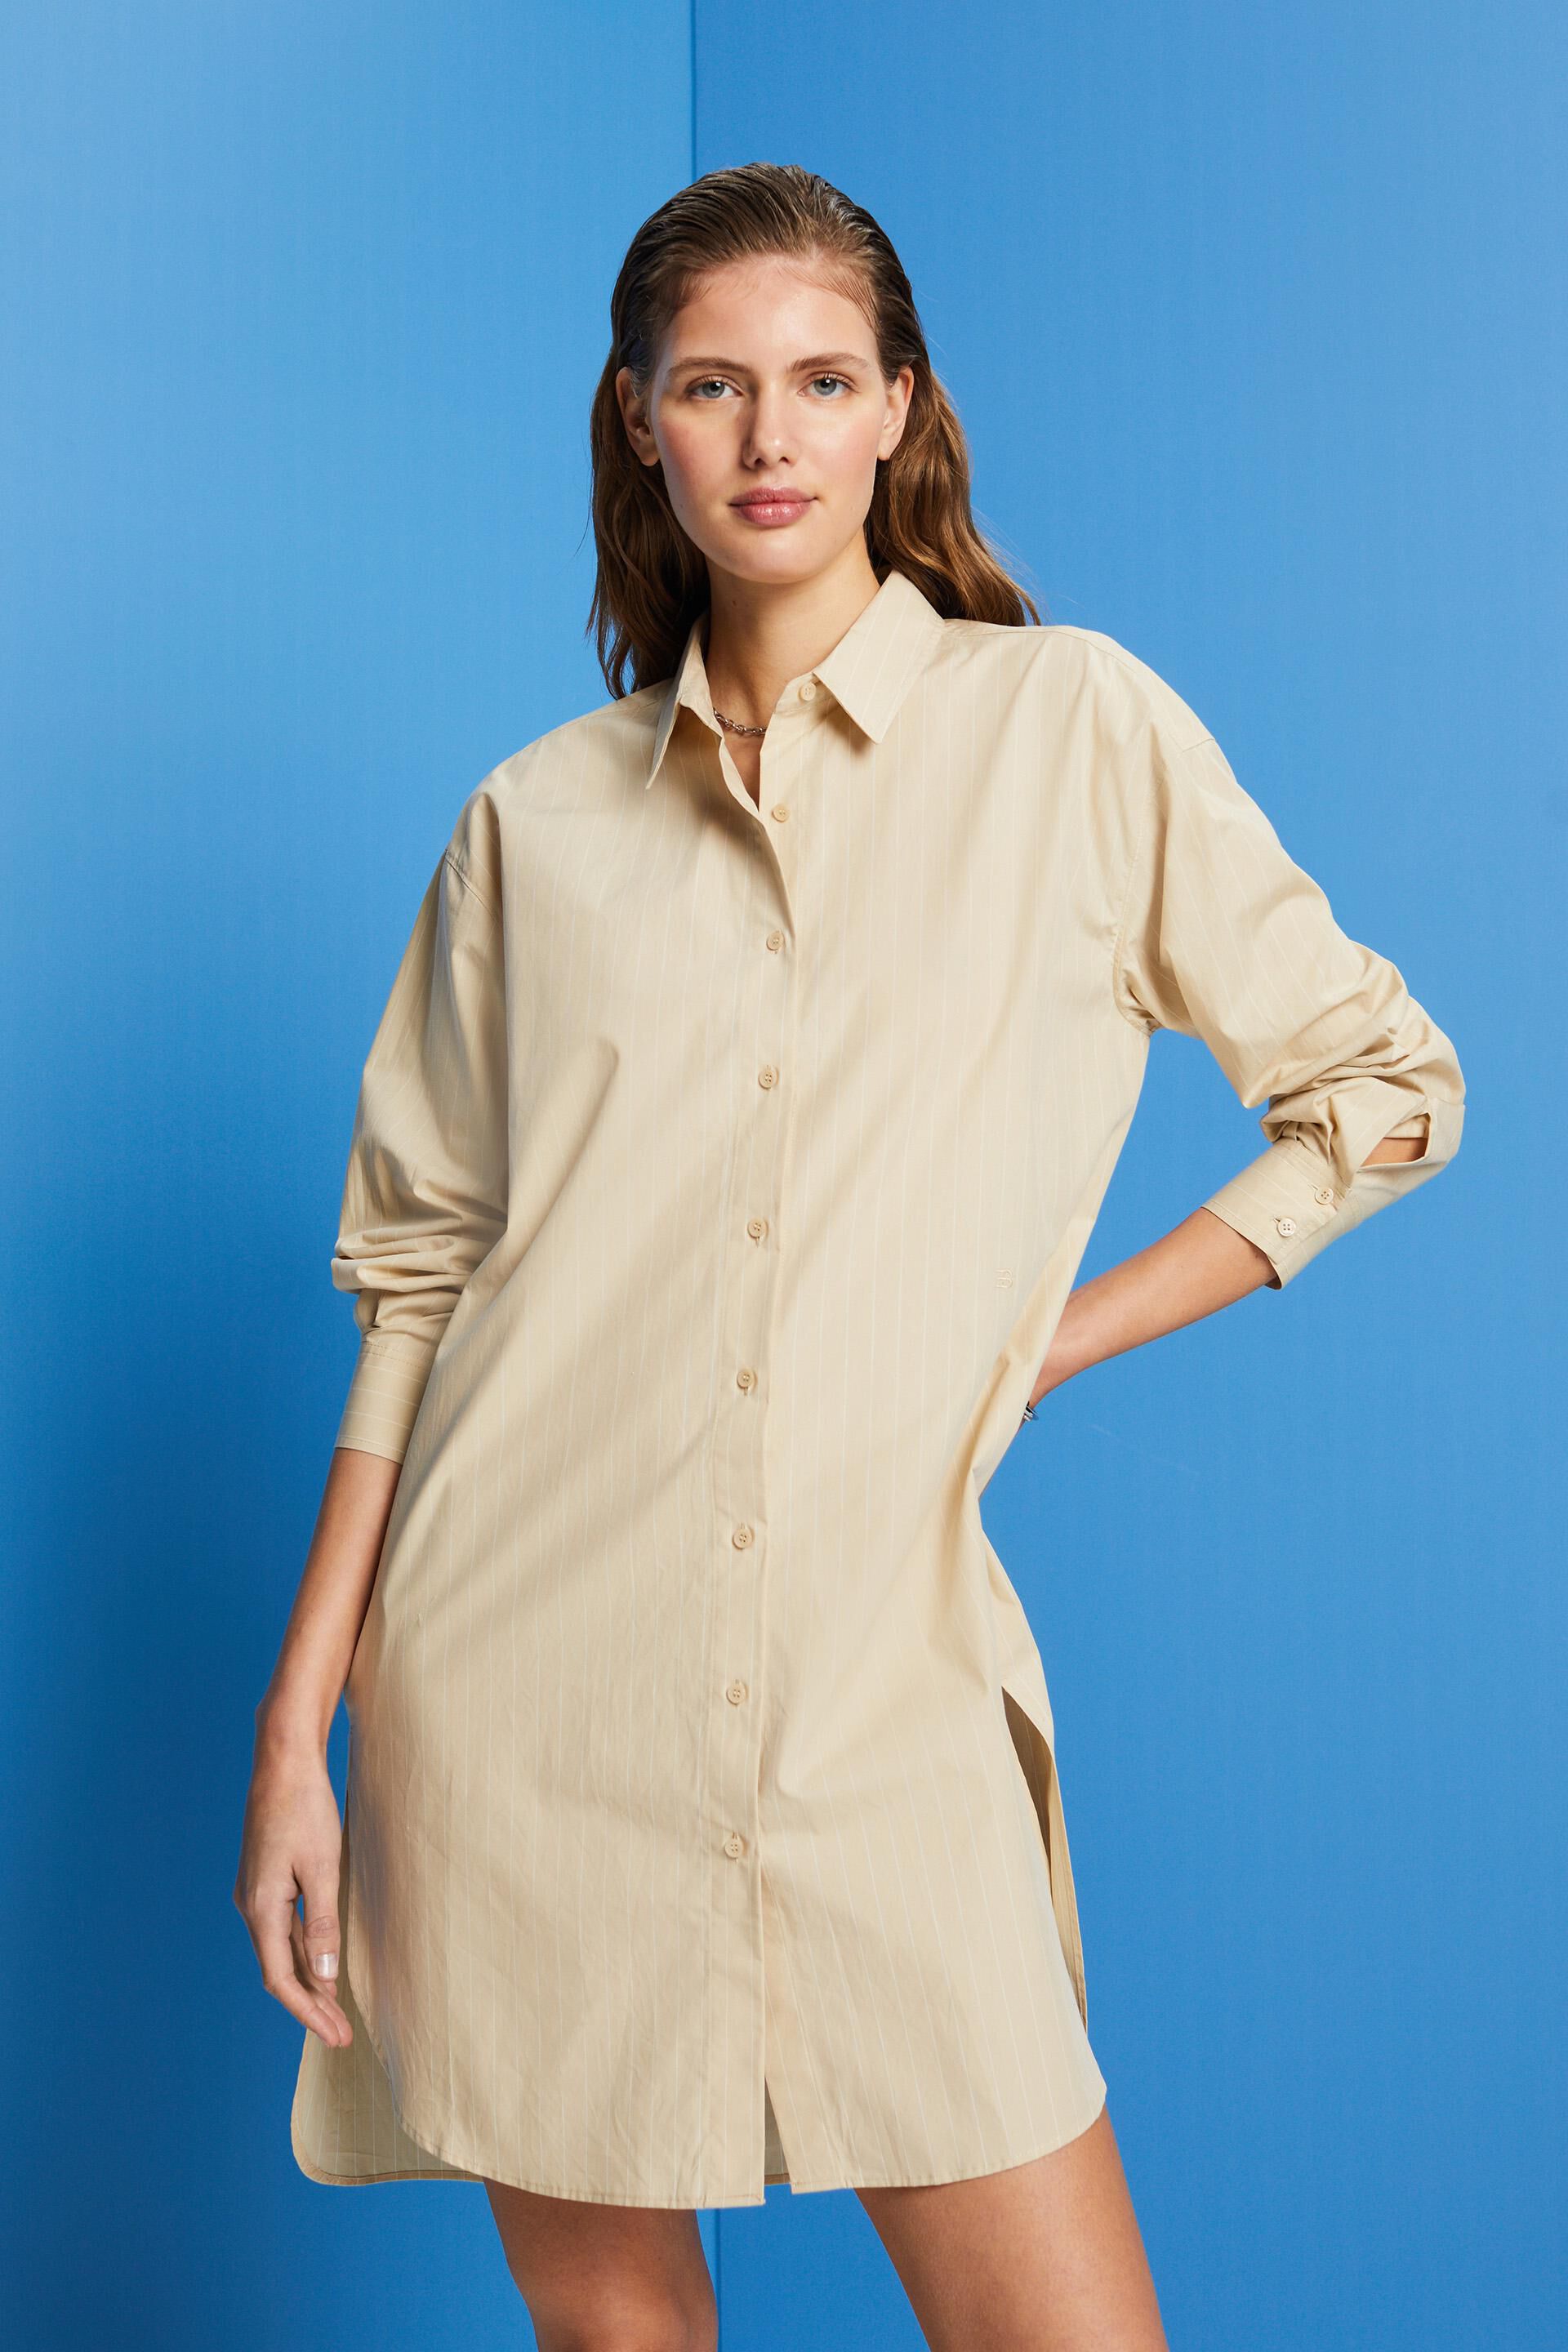 Esprit Pinstriped shirt 100% cotton dress,